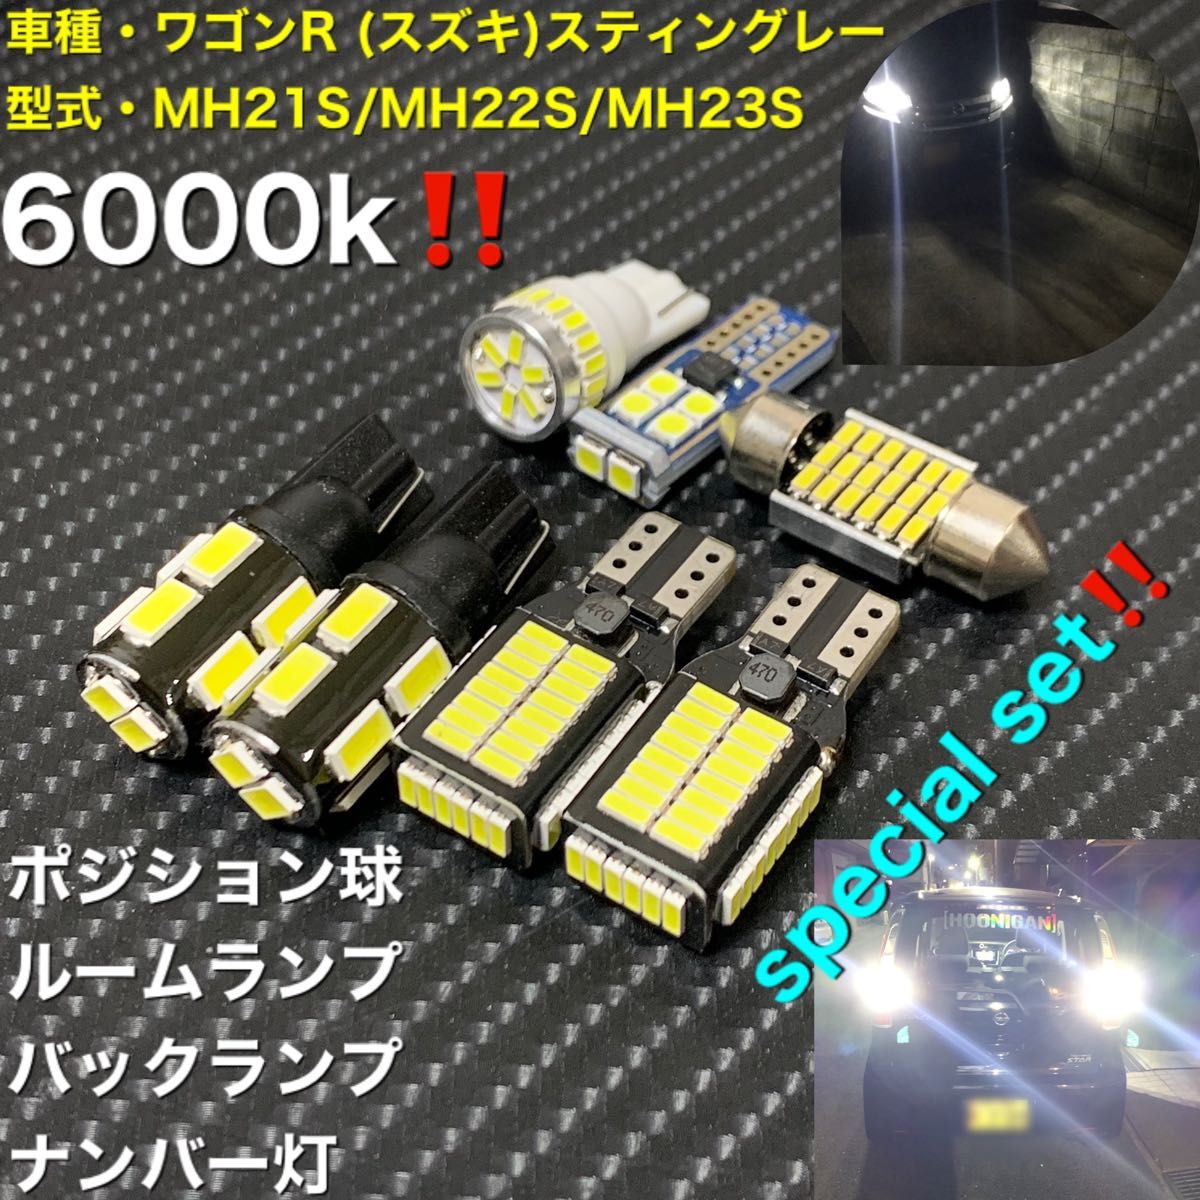 ワゴンR (スズキ)スティングレーMH21S//MH23S LED セット